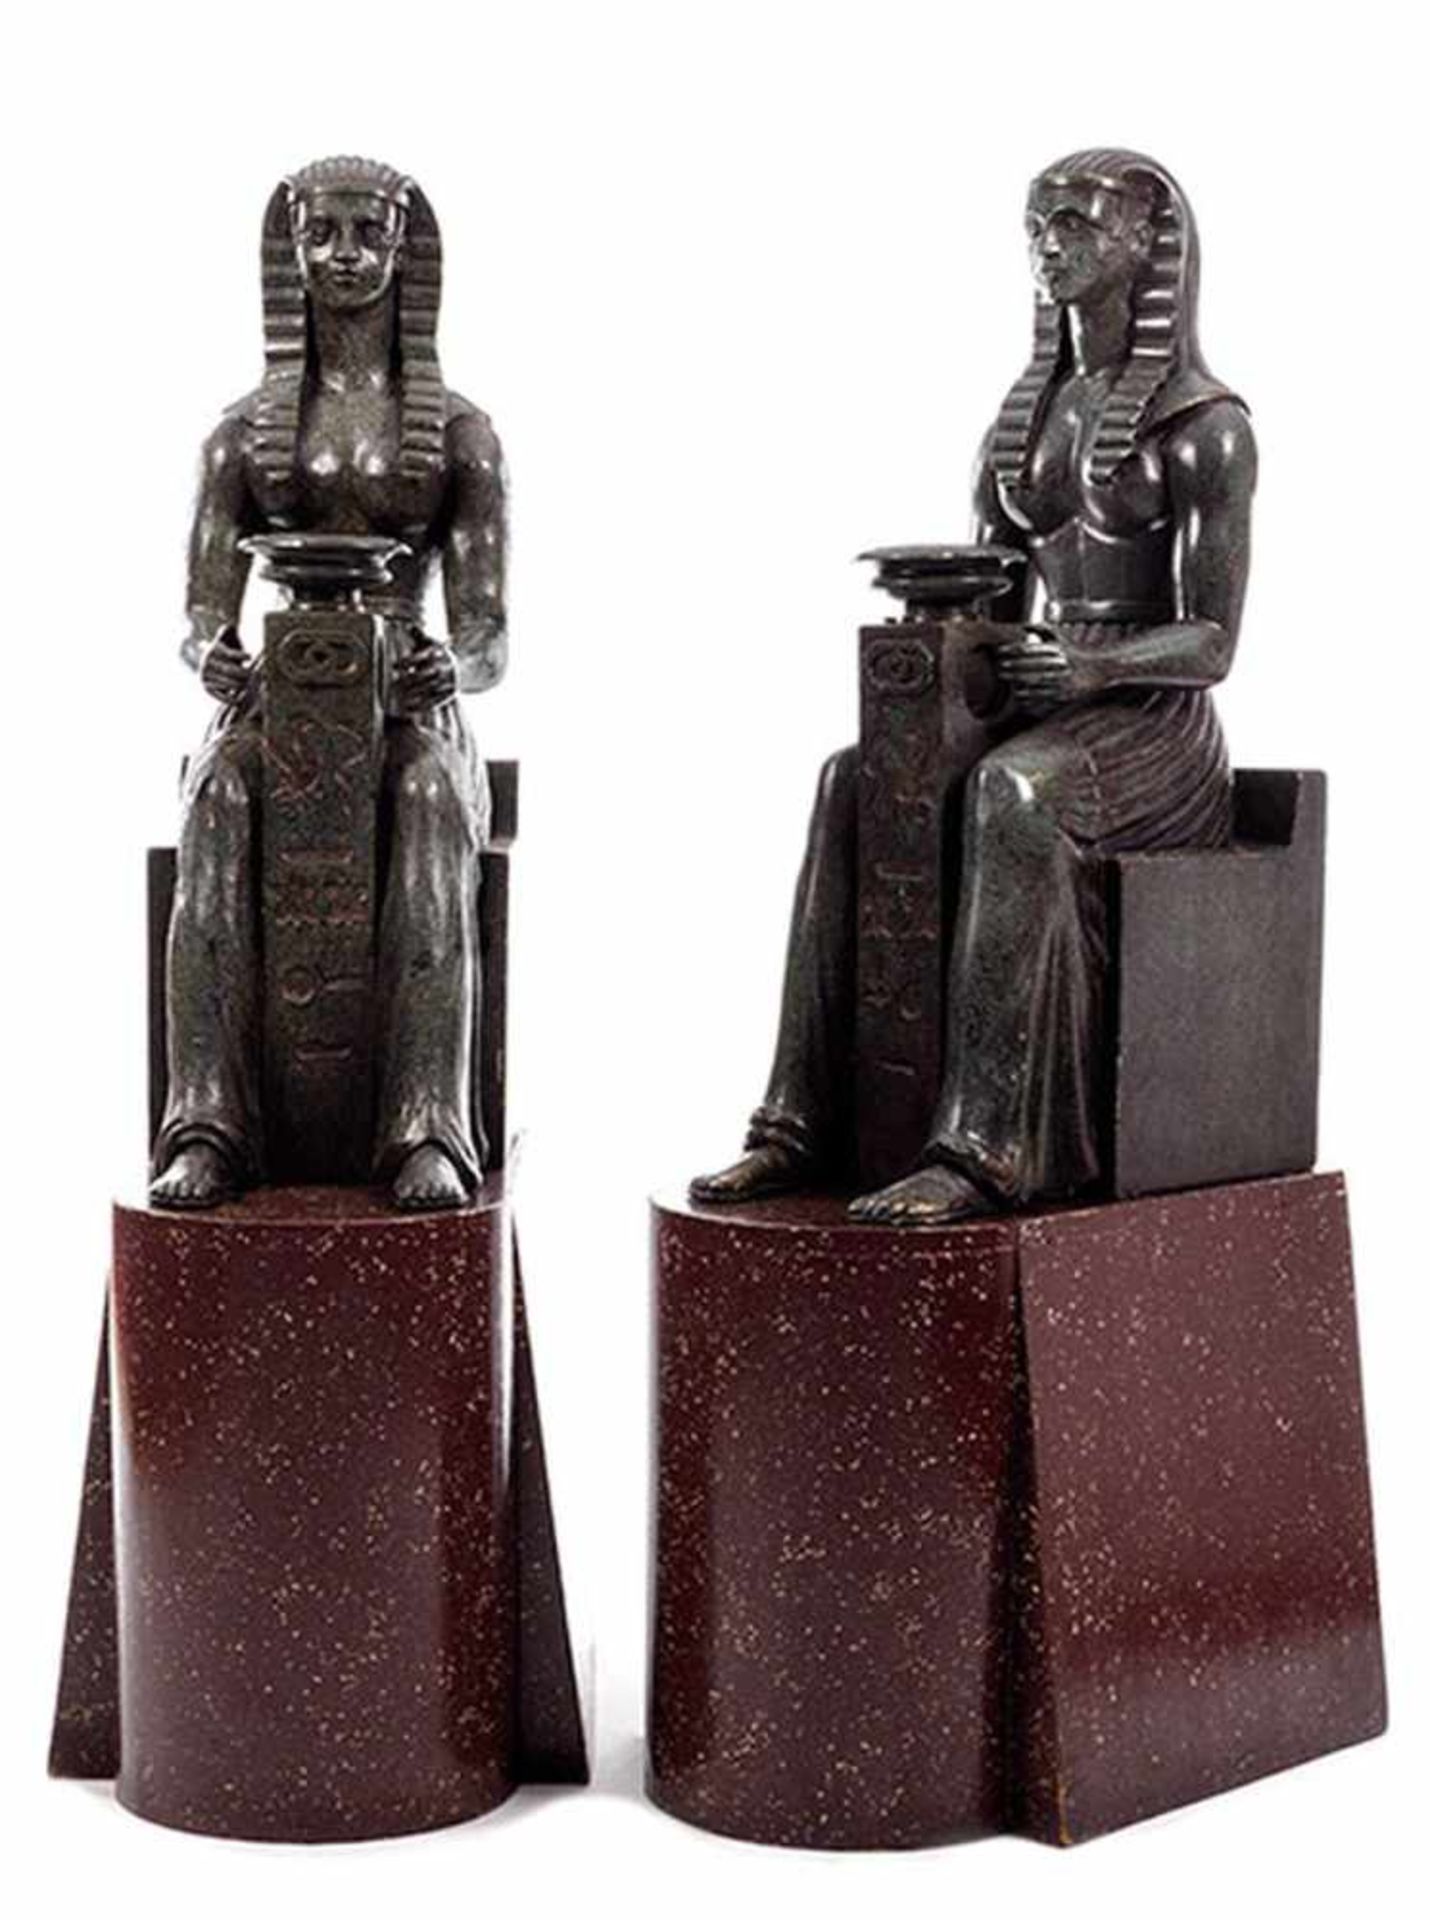 Zwei ägyptische Gottheiten Höhe mit Sockel: 163 cm. Ohne Sockel: 104 cm. Holz, geschnitzt, - Bild 3 aus 3